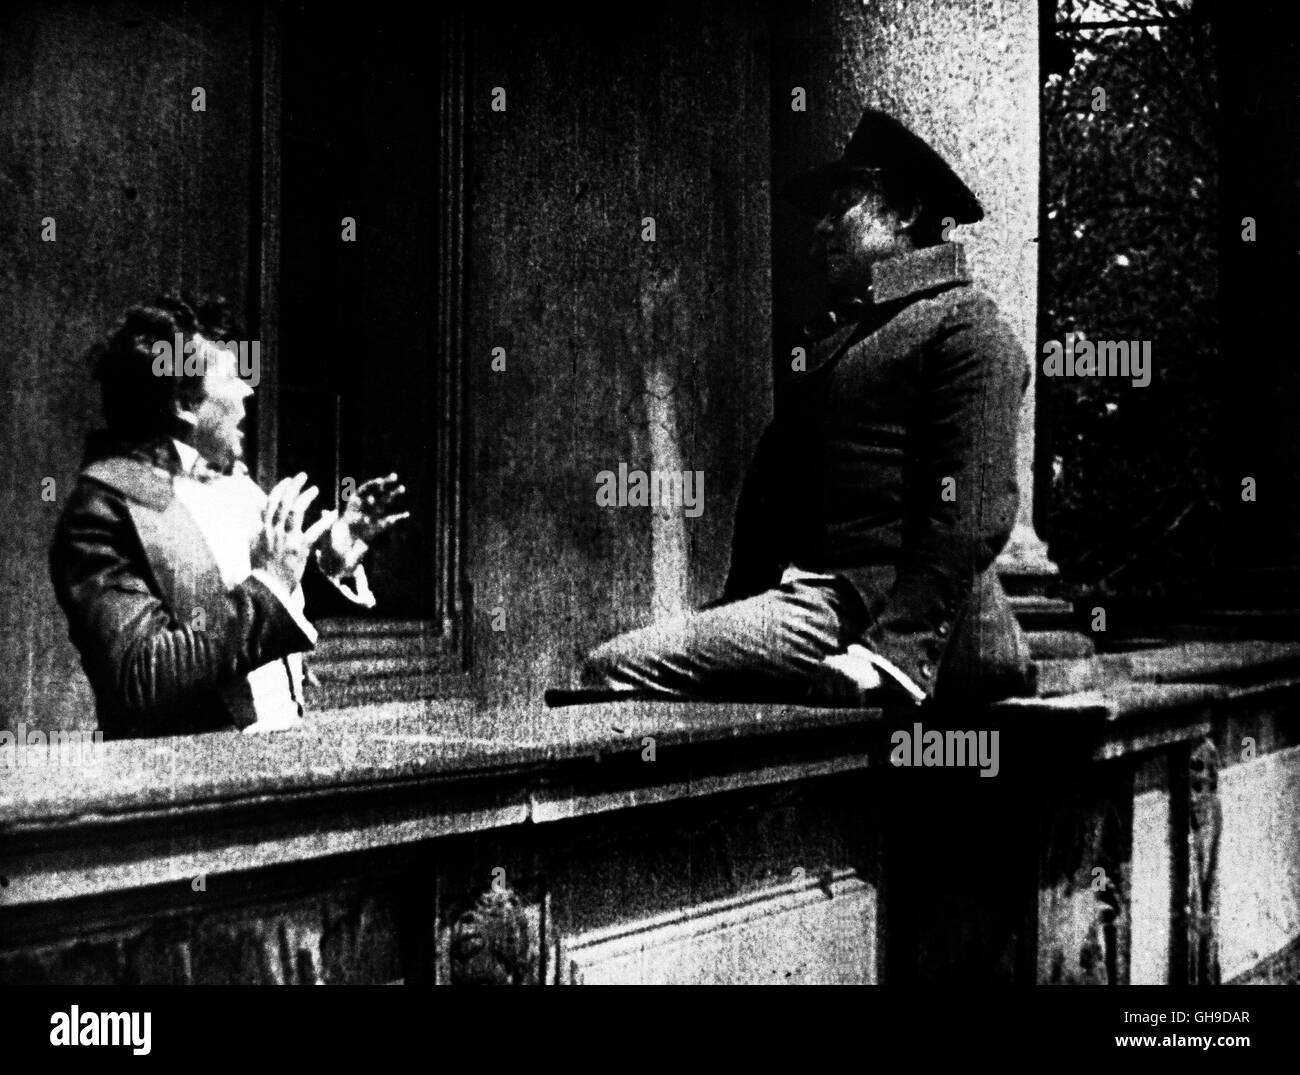 Szene mit Paul Wegener, rechts (Balduin) Regie: Hanns Heinz Ewers, Stellan Rye aka. Der Student von Prag Foto Stock